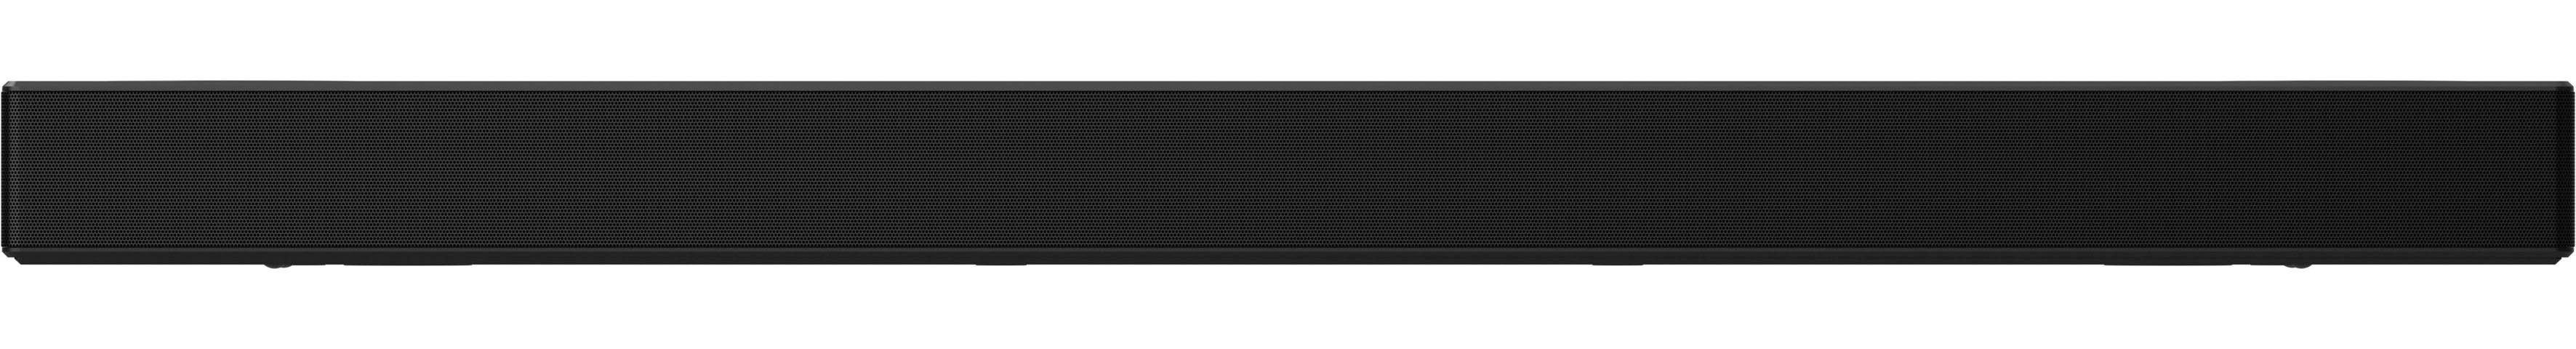 LG DSPD7Y 3.1.2 Soundbar (Bluetooth, 380 Pro,High Res Sound) Sound Atmos Dolby / Audio,MERIDIAN W, DTS:X,AI